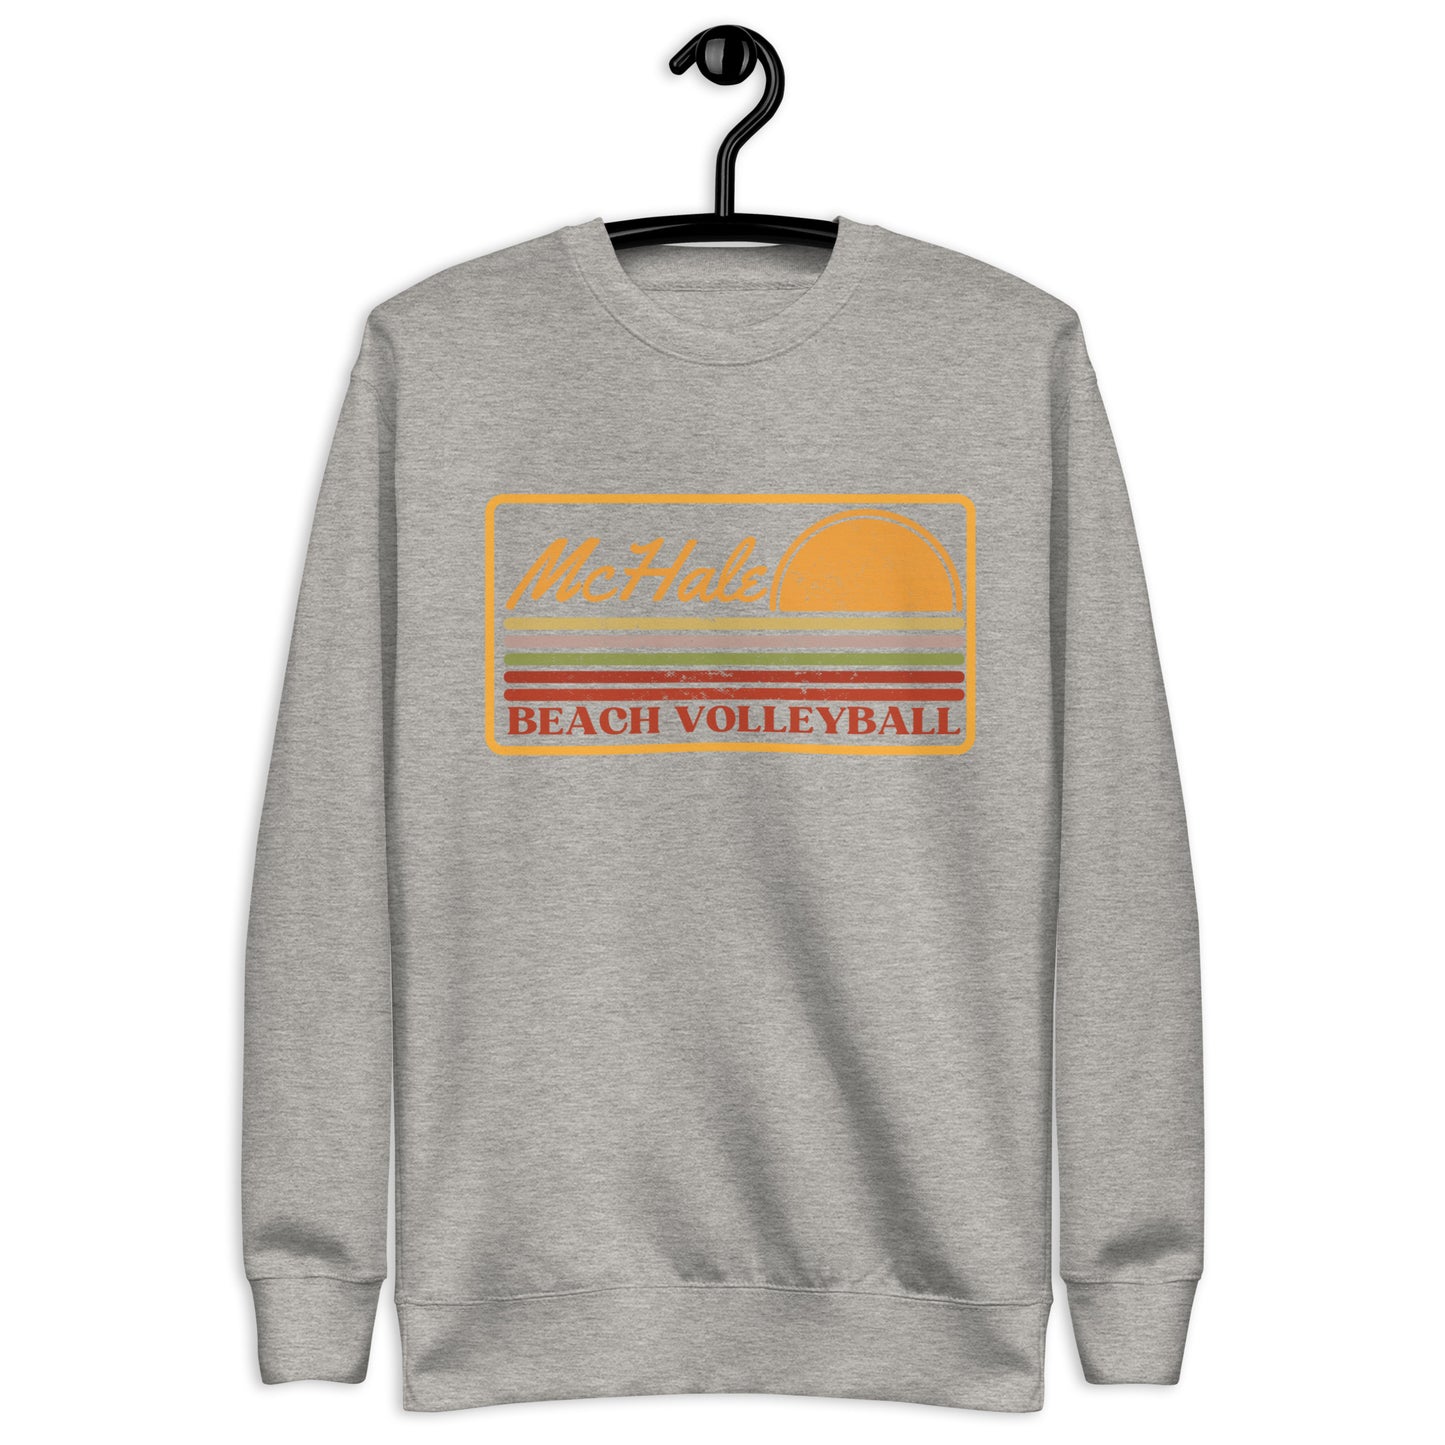 Sunset Unisex Crewneck Sweatshirt